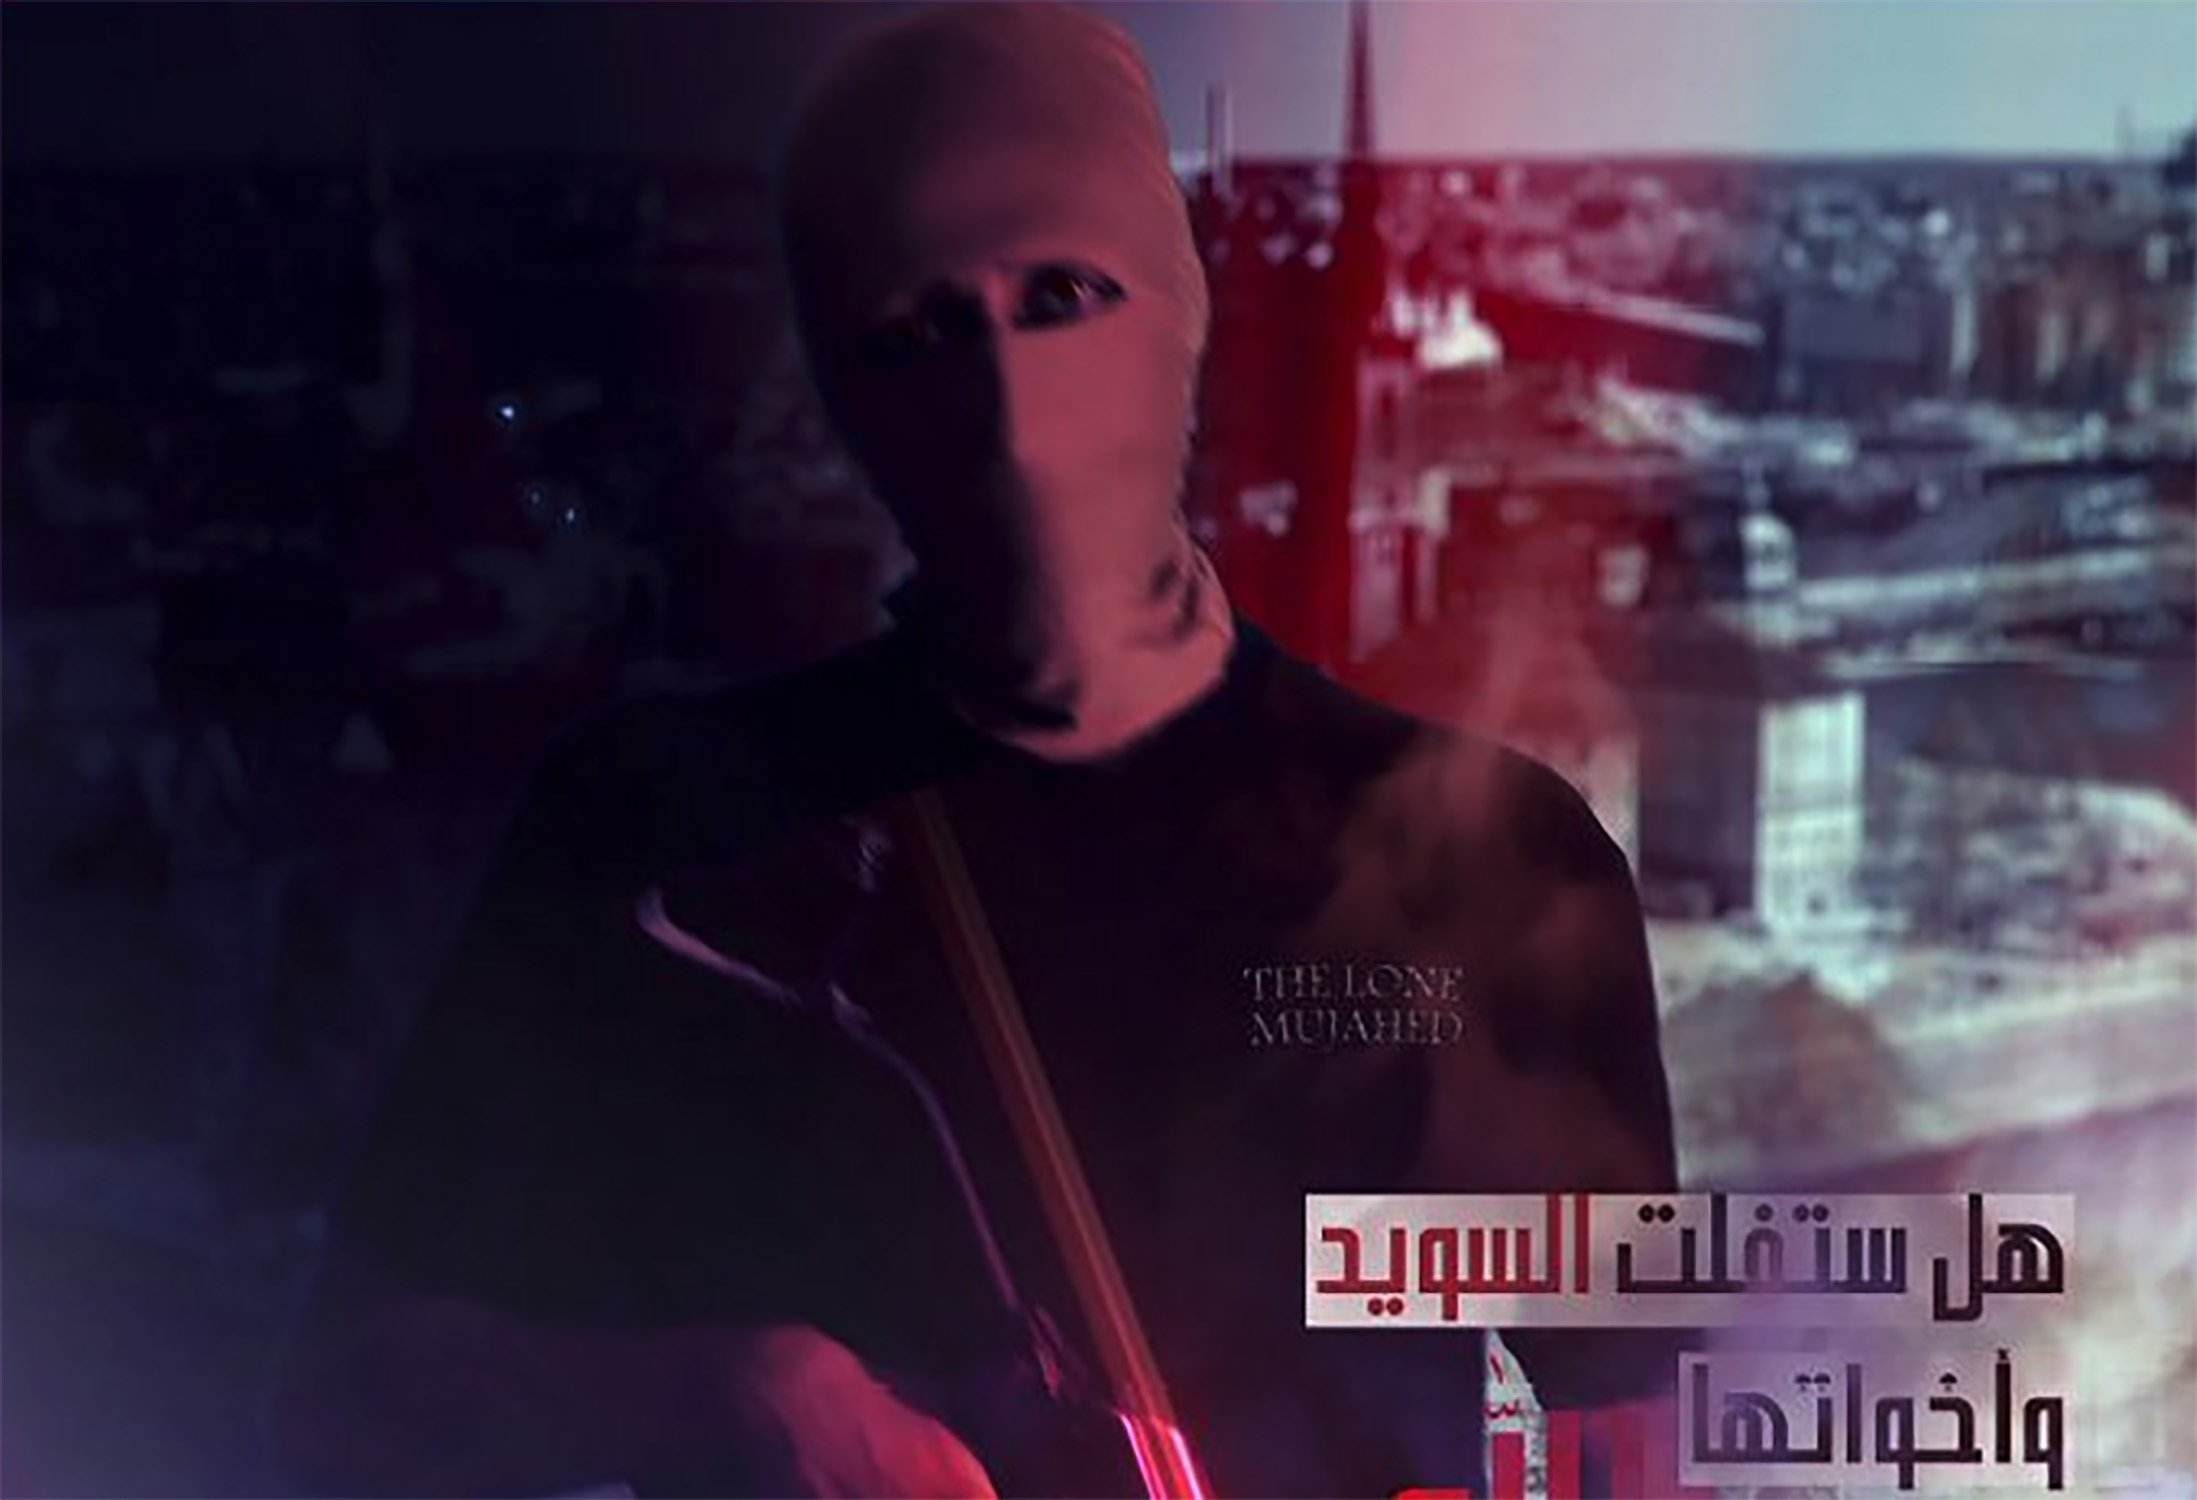 Al-Qaeda posa França i Suècia entre els seus objectius d'atacs terroristes